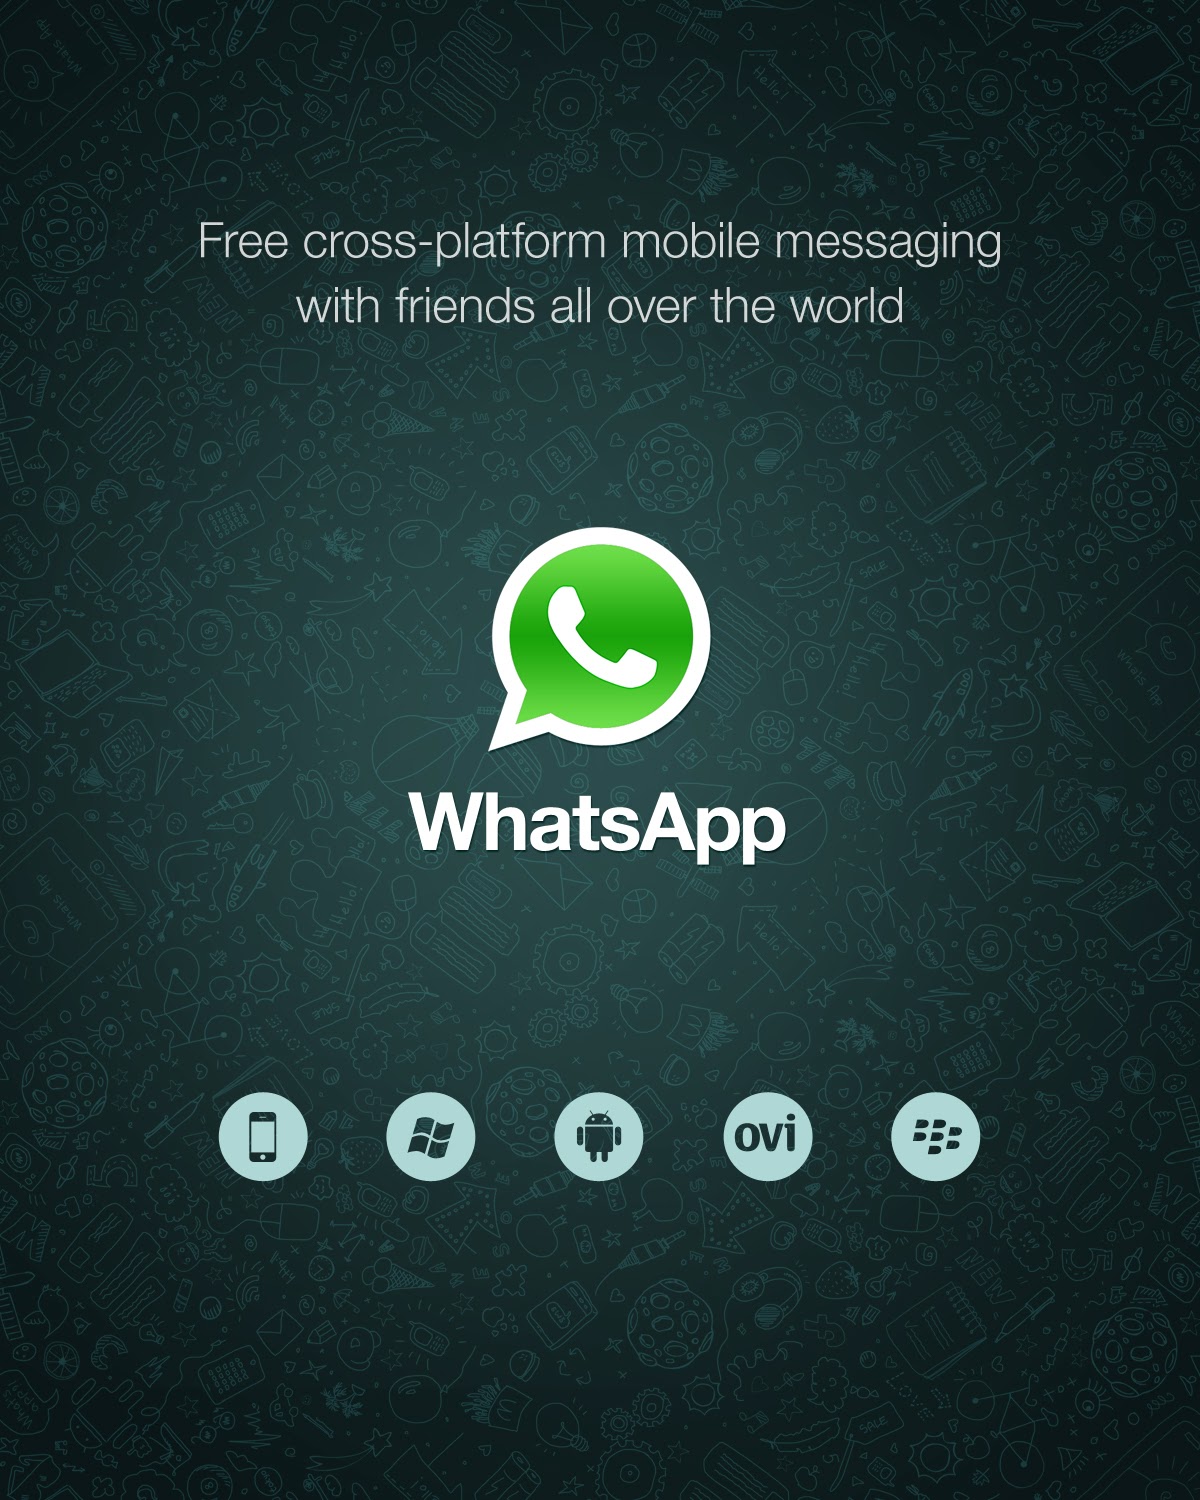 Cara menggunakan whatsapp for android dengan Mudah dan Cara